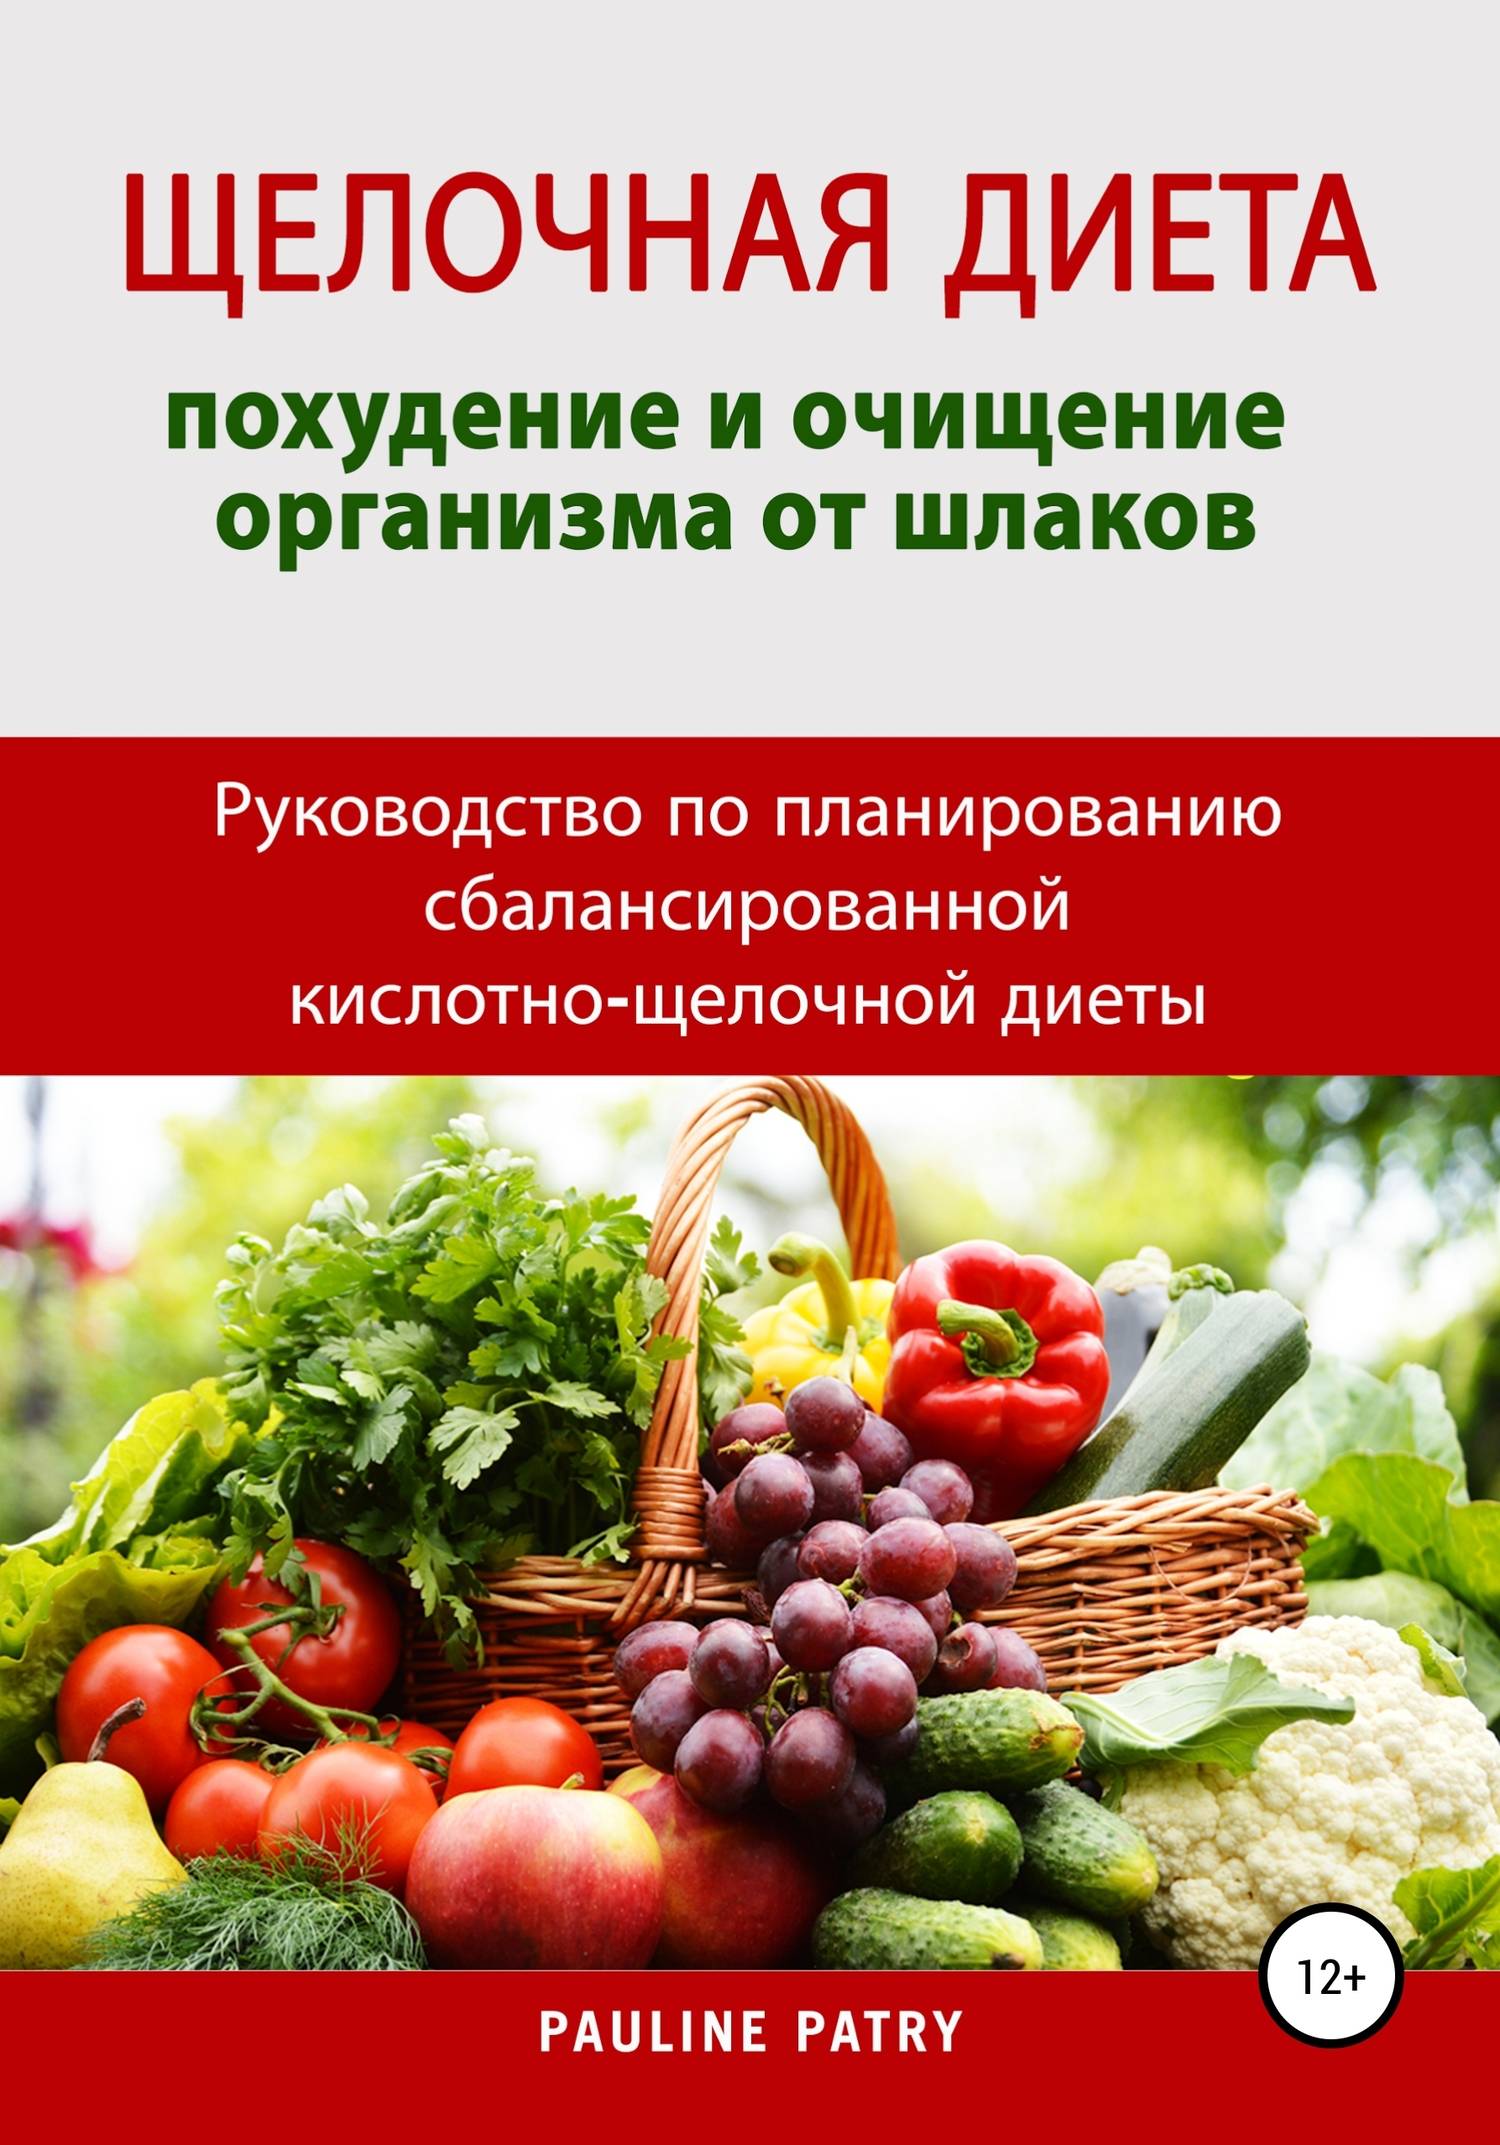 Очищающая диета : меню и рецепты | компетентно о здоровье на ilive